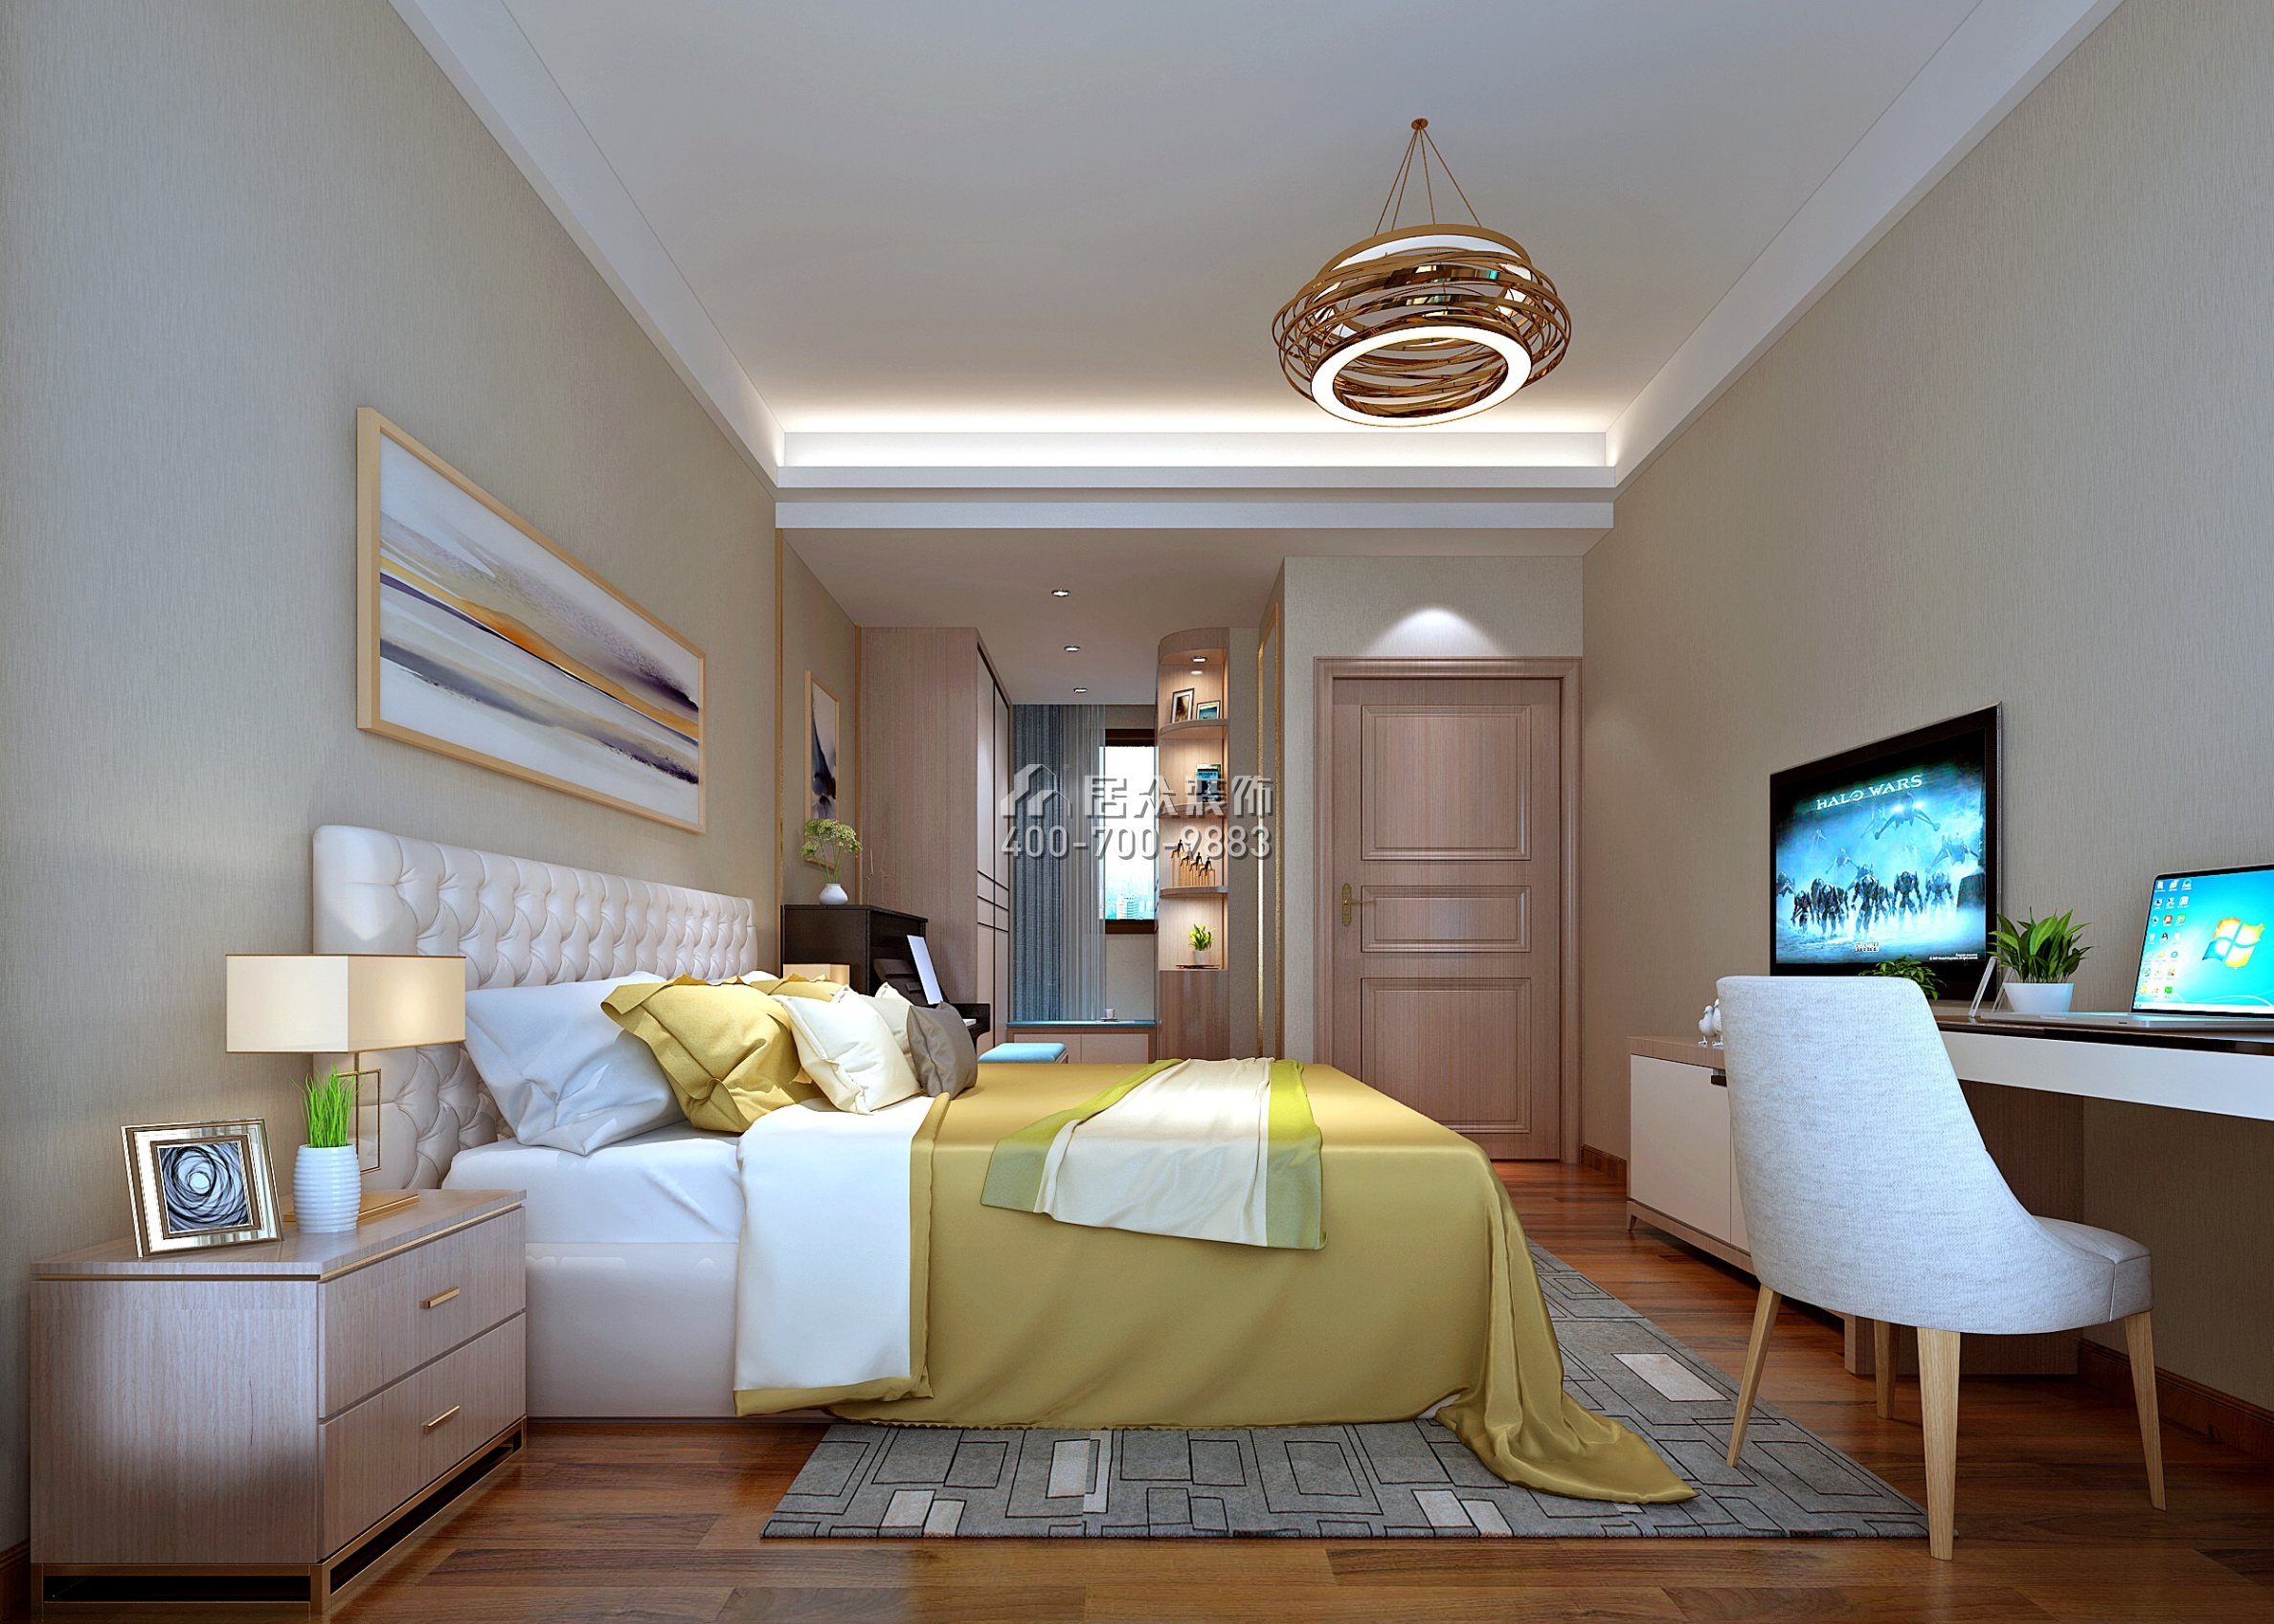 鼎峰国汇山128平方米现代简约风格平层户型卧室装修效果图